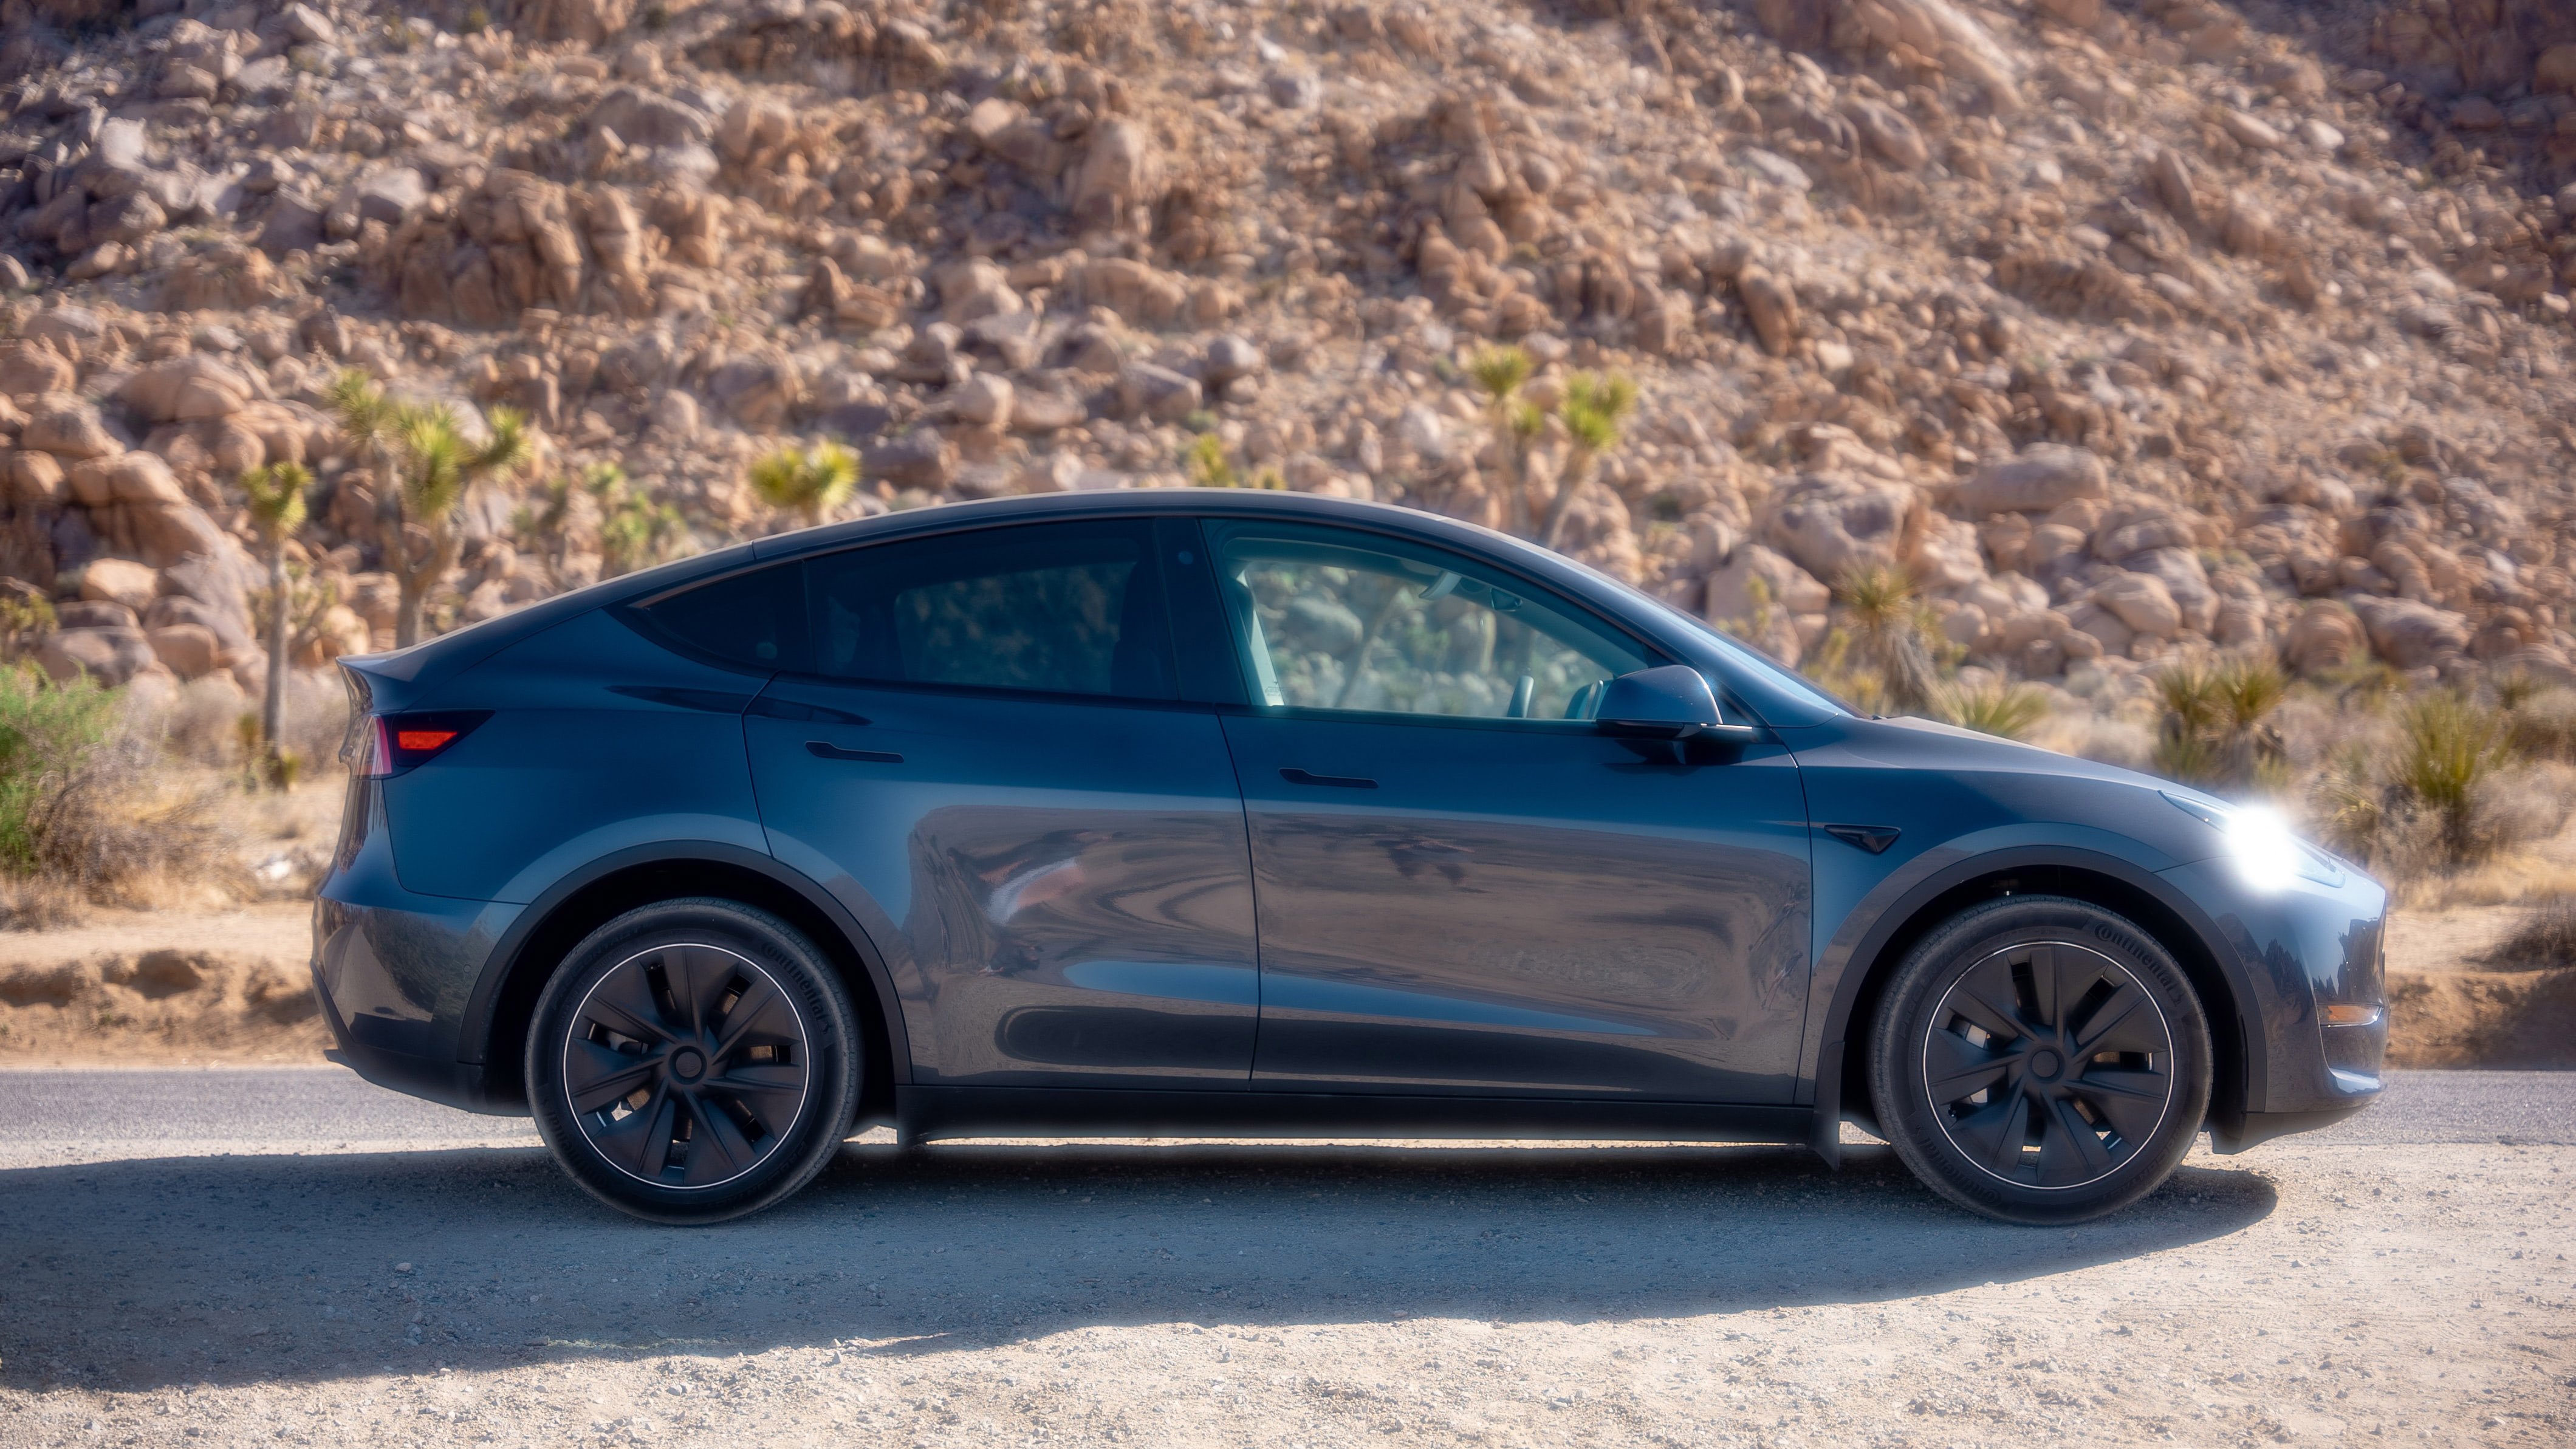 A Tesla Model Y parked in a rocky landscape.